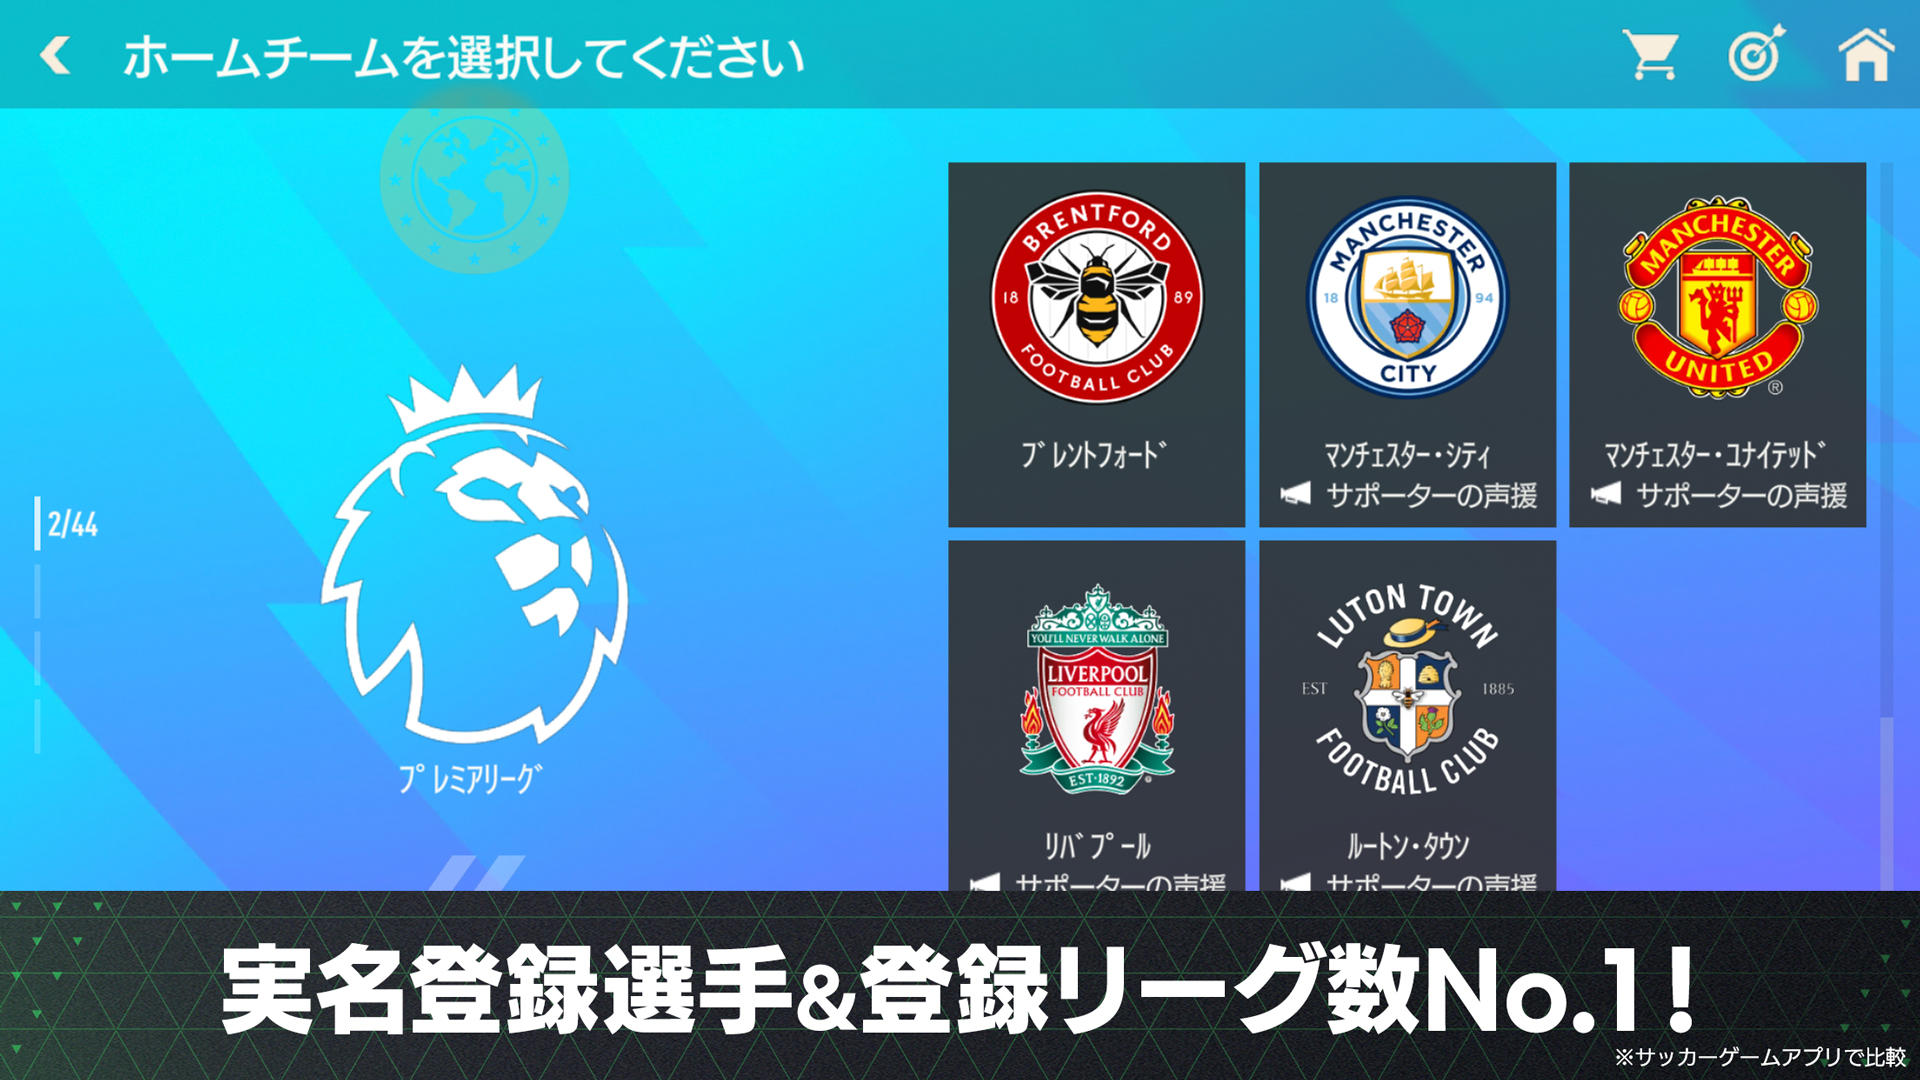 FIFA Mobile Soccer 17.0.03 para Android - APK Download gratuito e revisões  de aplicativos